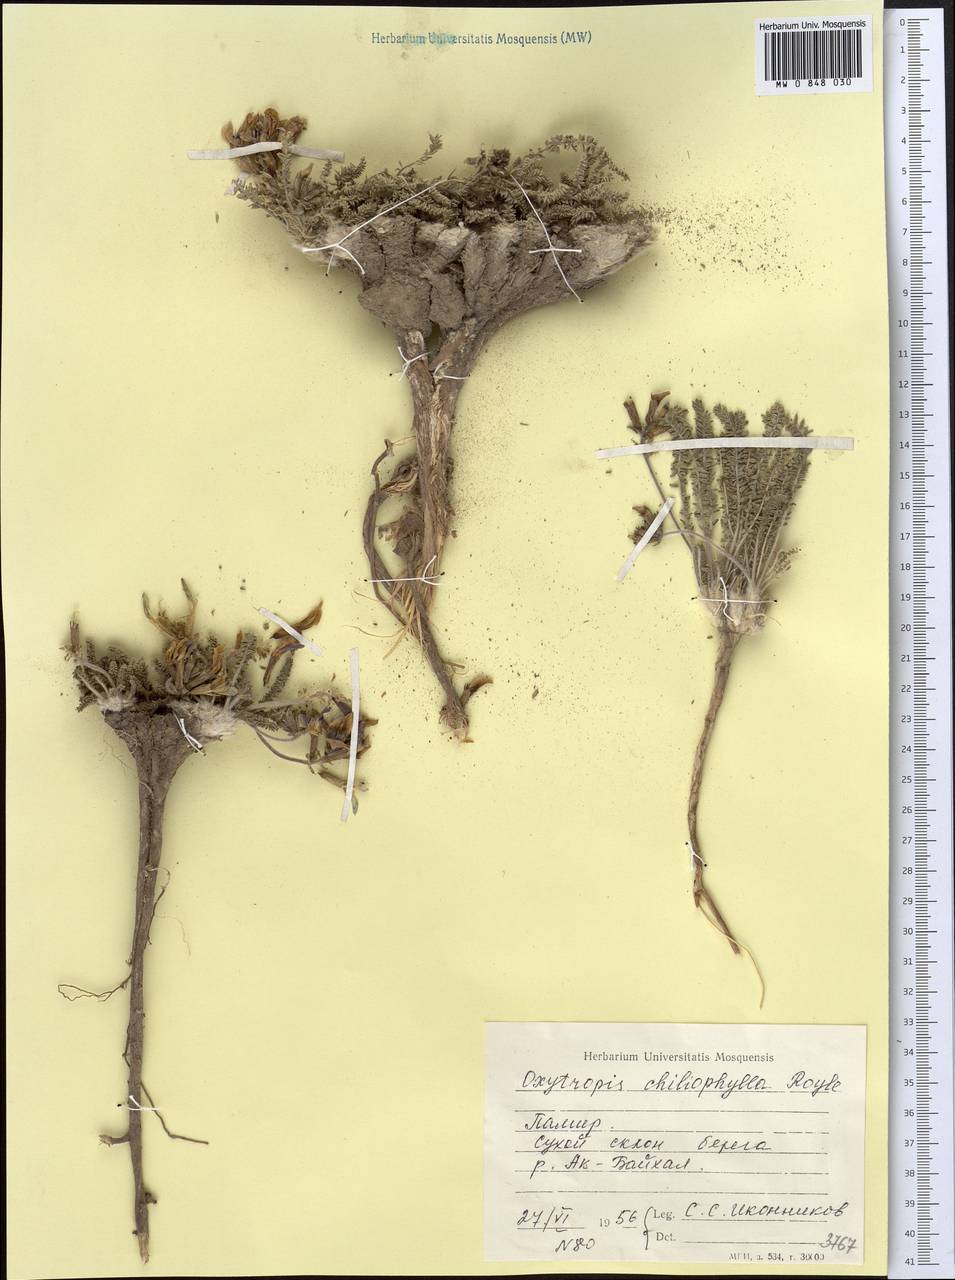 Oxytropis chiliophylla Benth., Middle Asia, Pamir & Pamiro-Alai (M2) (Tajikistan)